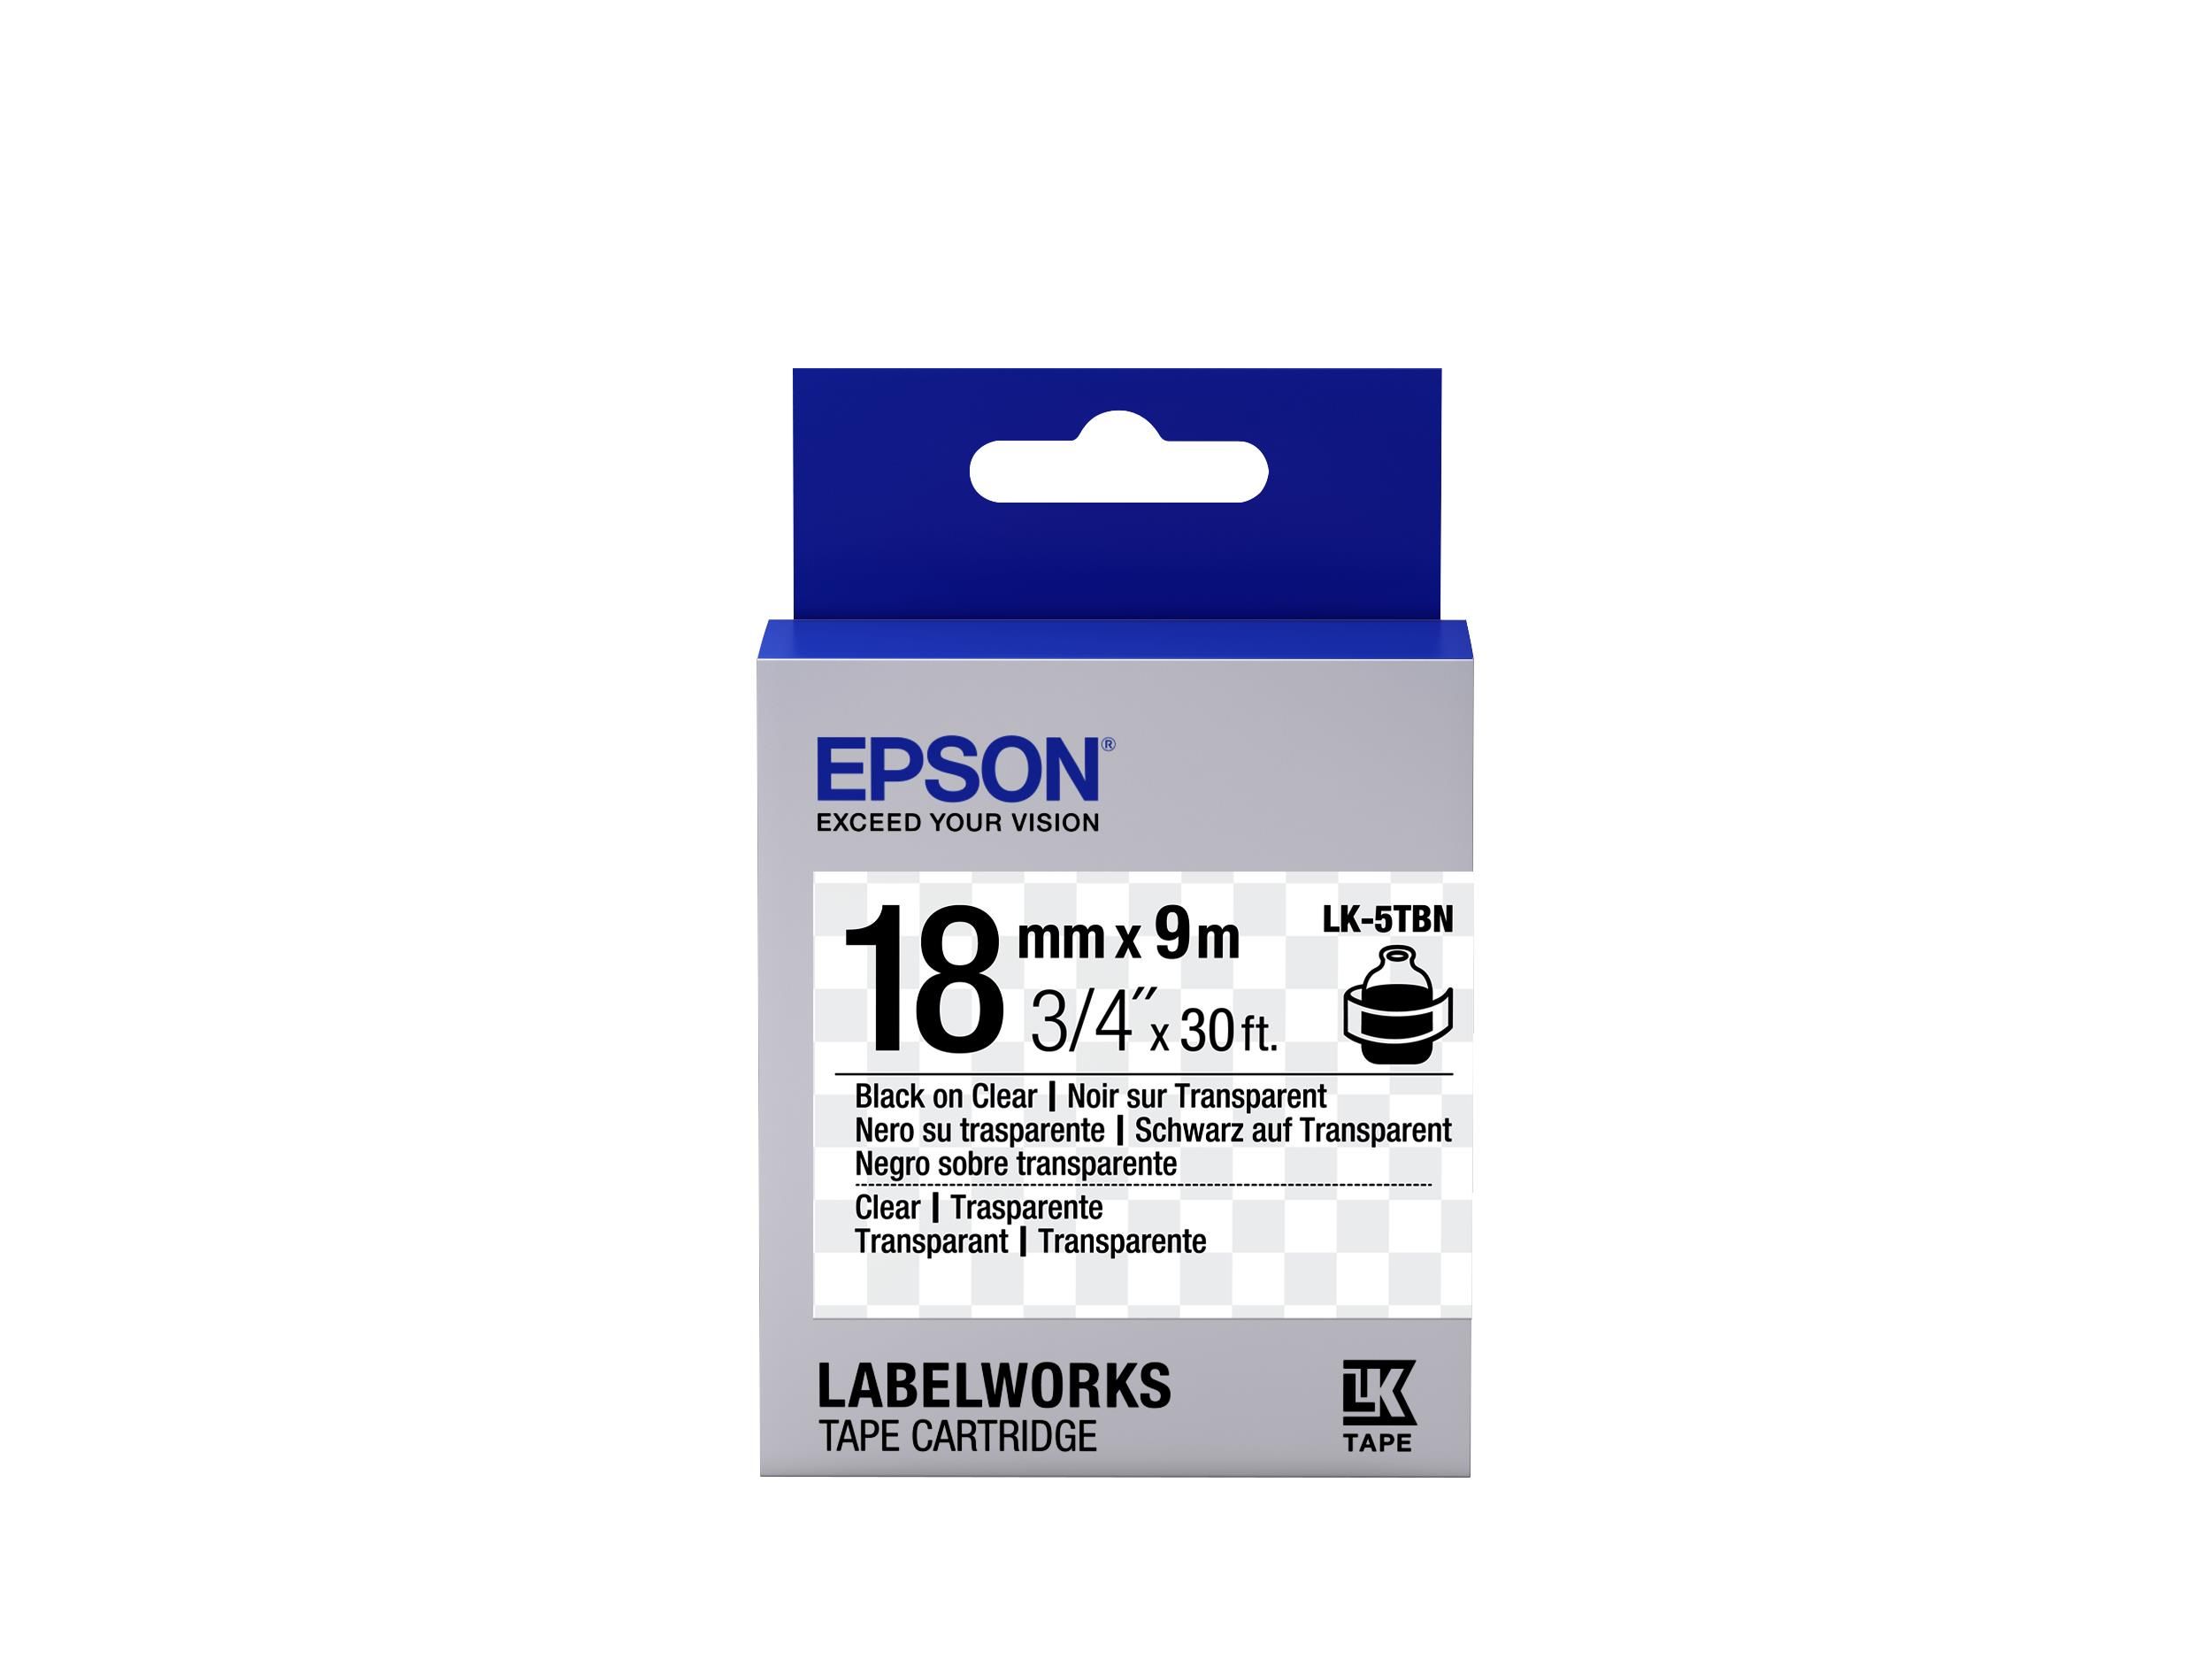 Epson Nastro Lk5tbn Clear